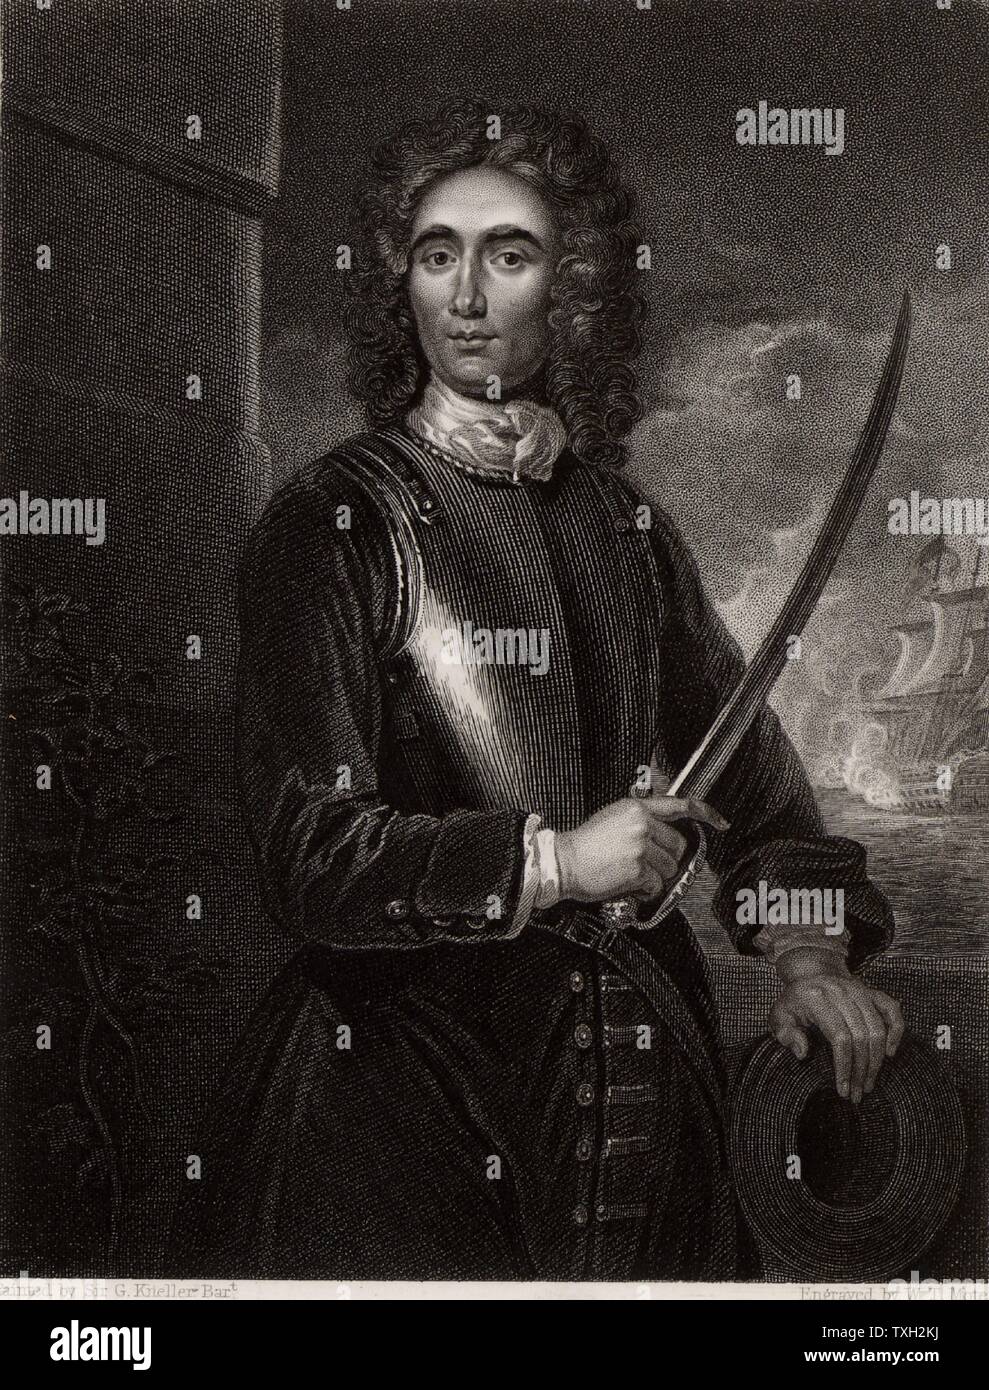 John Benbow (1653-1702) German naval Commander in Shrewsbury, Shropshire geboren. Vizeadmiral 1701. In Westindien, aus Santa Marta, begegnete er überlegenen Französischen Truppen unter Du Casse am 19. August 1702. Sein Bein durch die Kette zerschlagen - geschossen und von seinen Obersten verlassen, starb er in Jamaika an seinen Wunden im Oktober. Als "Brave Benbow' erinnert. Gravur nach Portrait von Godfrey Kneller. Stockfoto